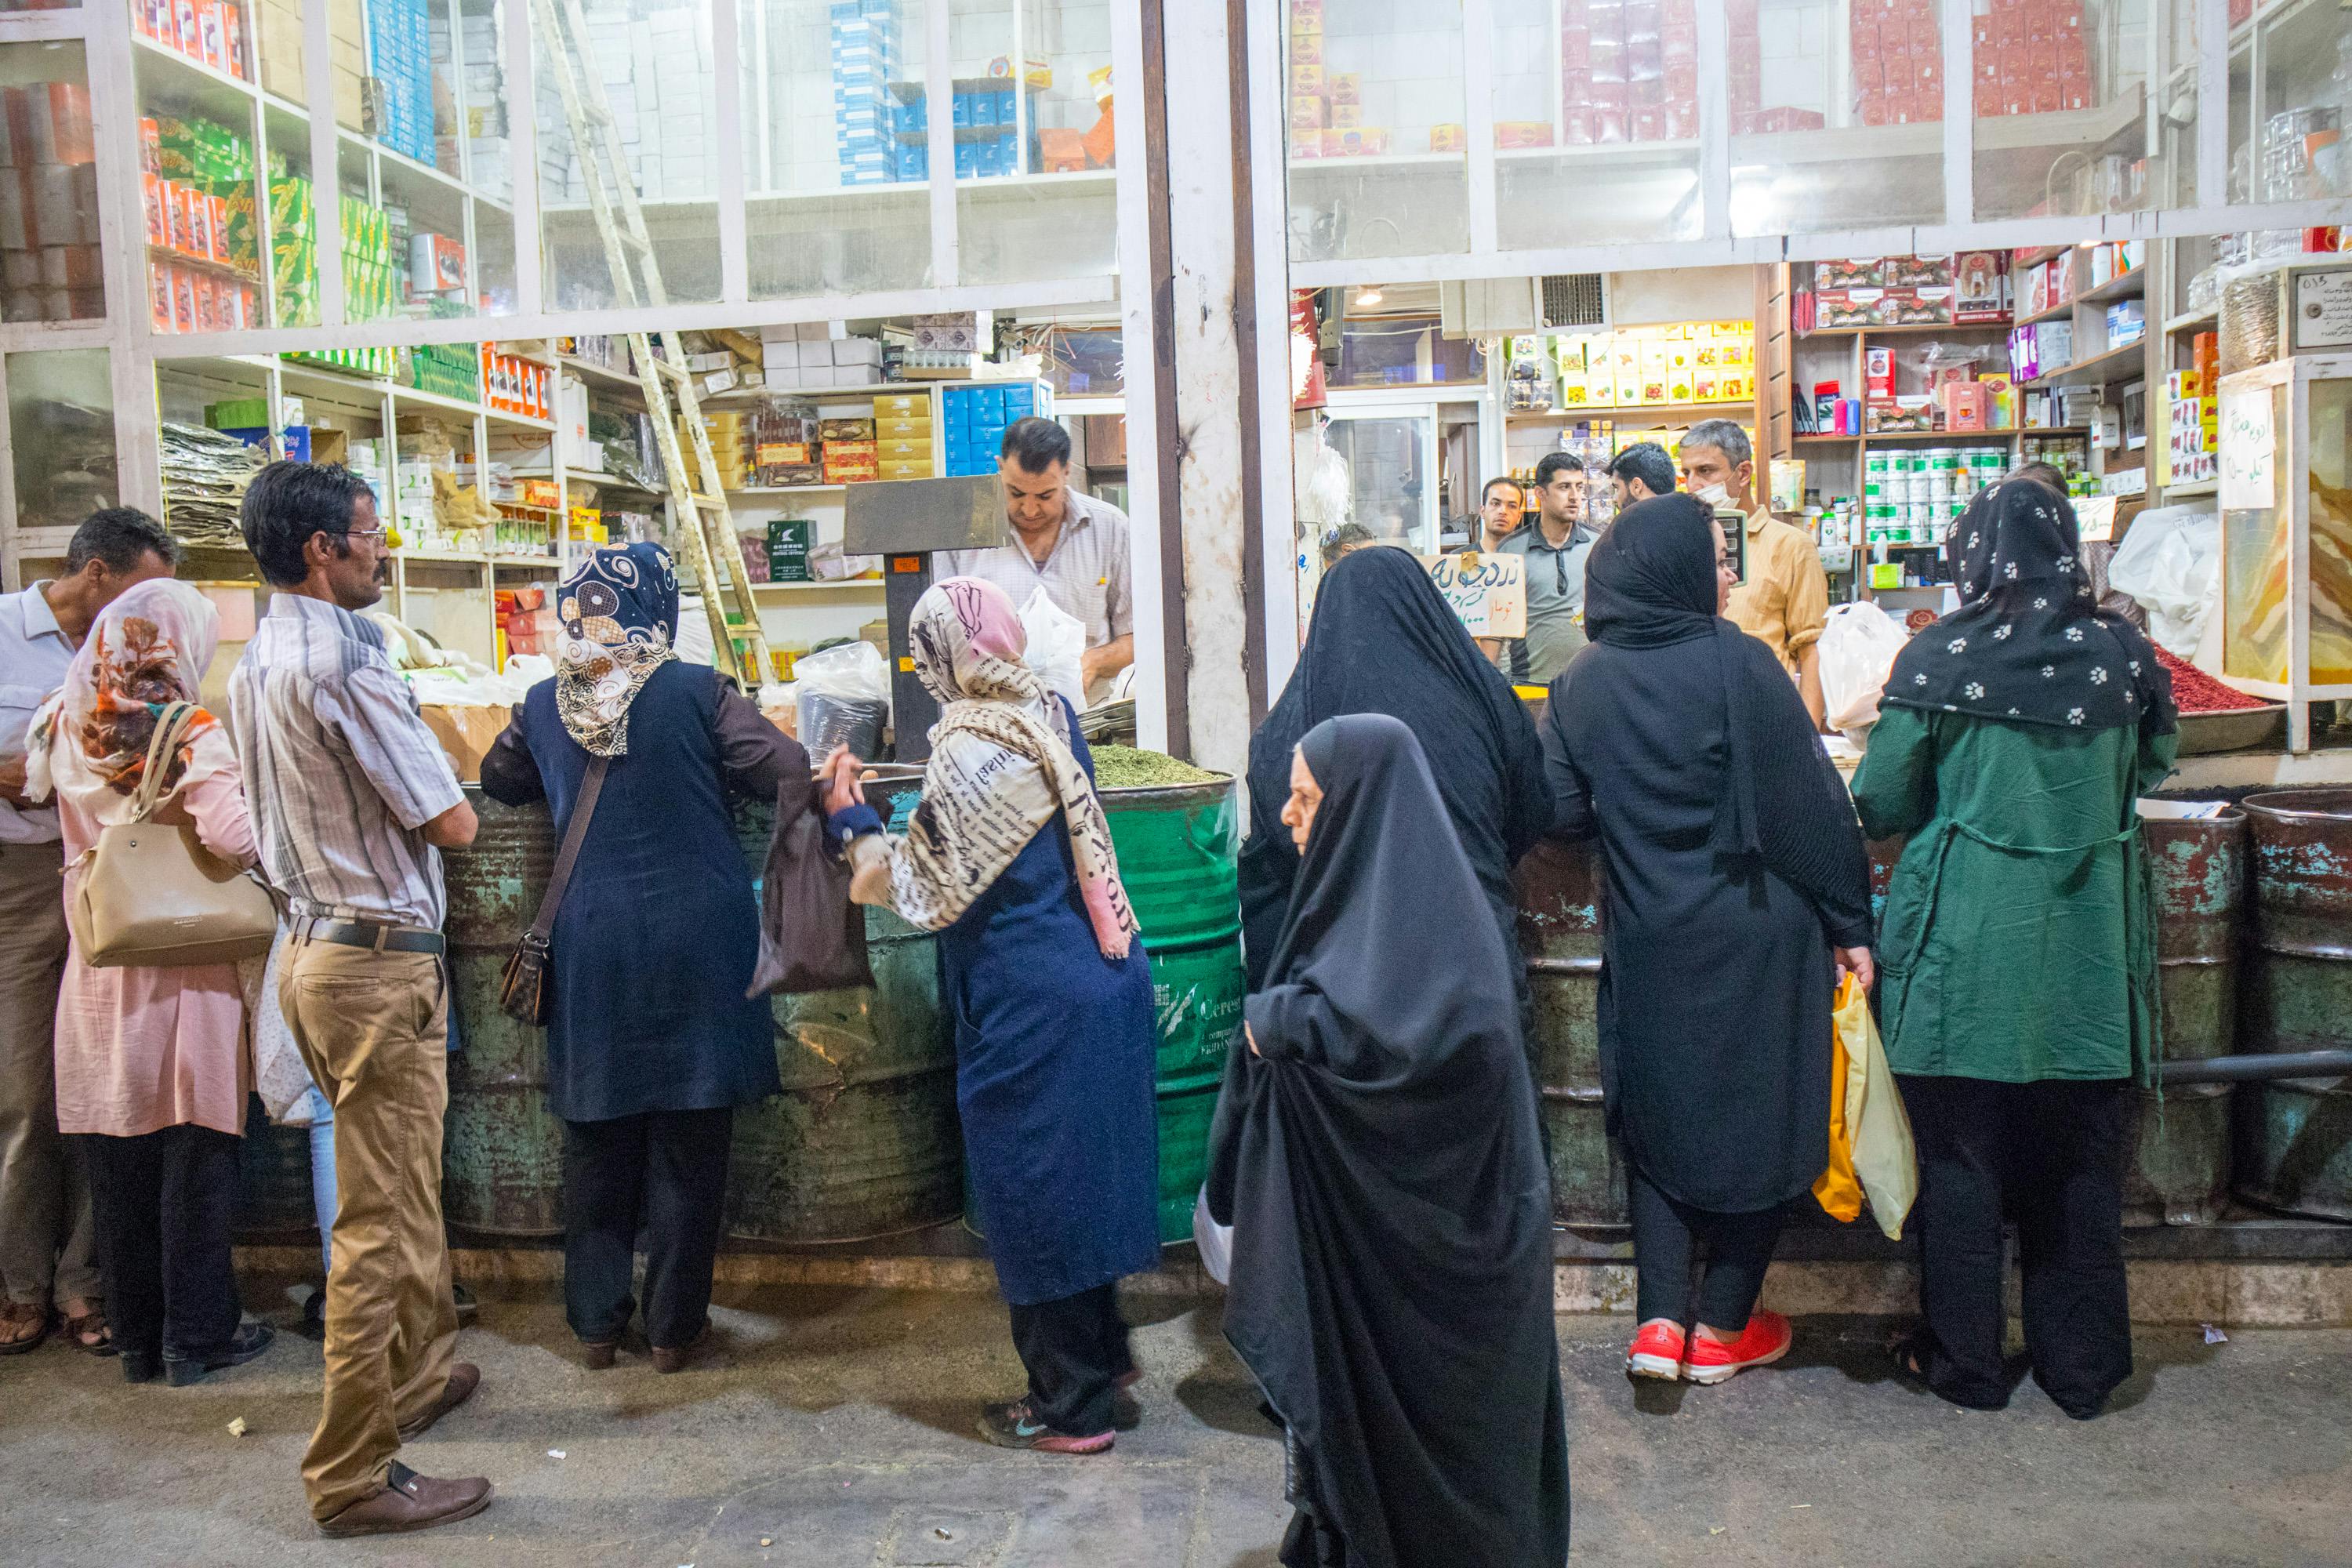 kobiety stoją w kolejce do sklepu na vakil bazaar w shiraz, w iranie